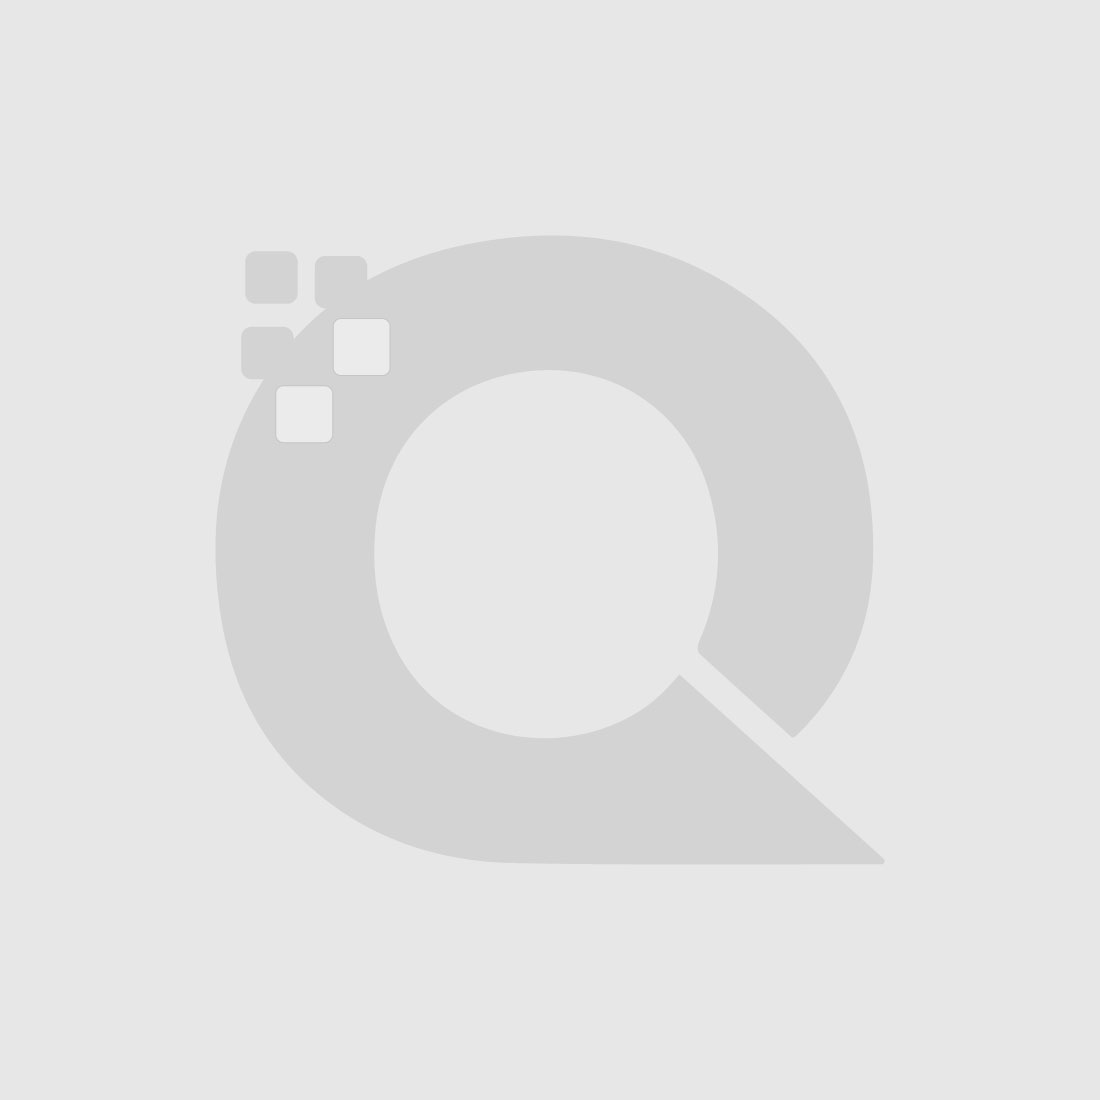 Guerniss Paris Velvet Matte Lipstick - GS016 - 3.5g